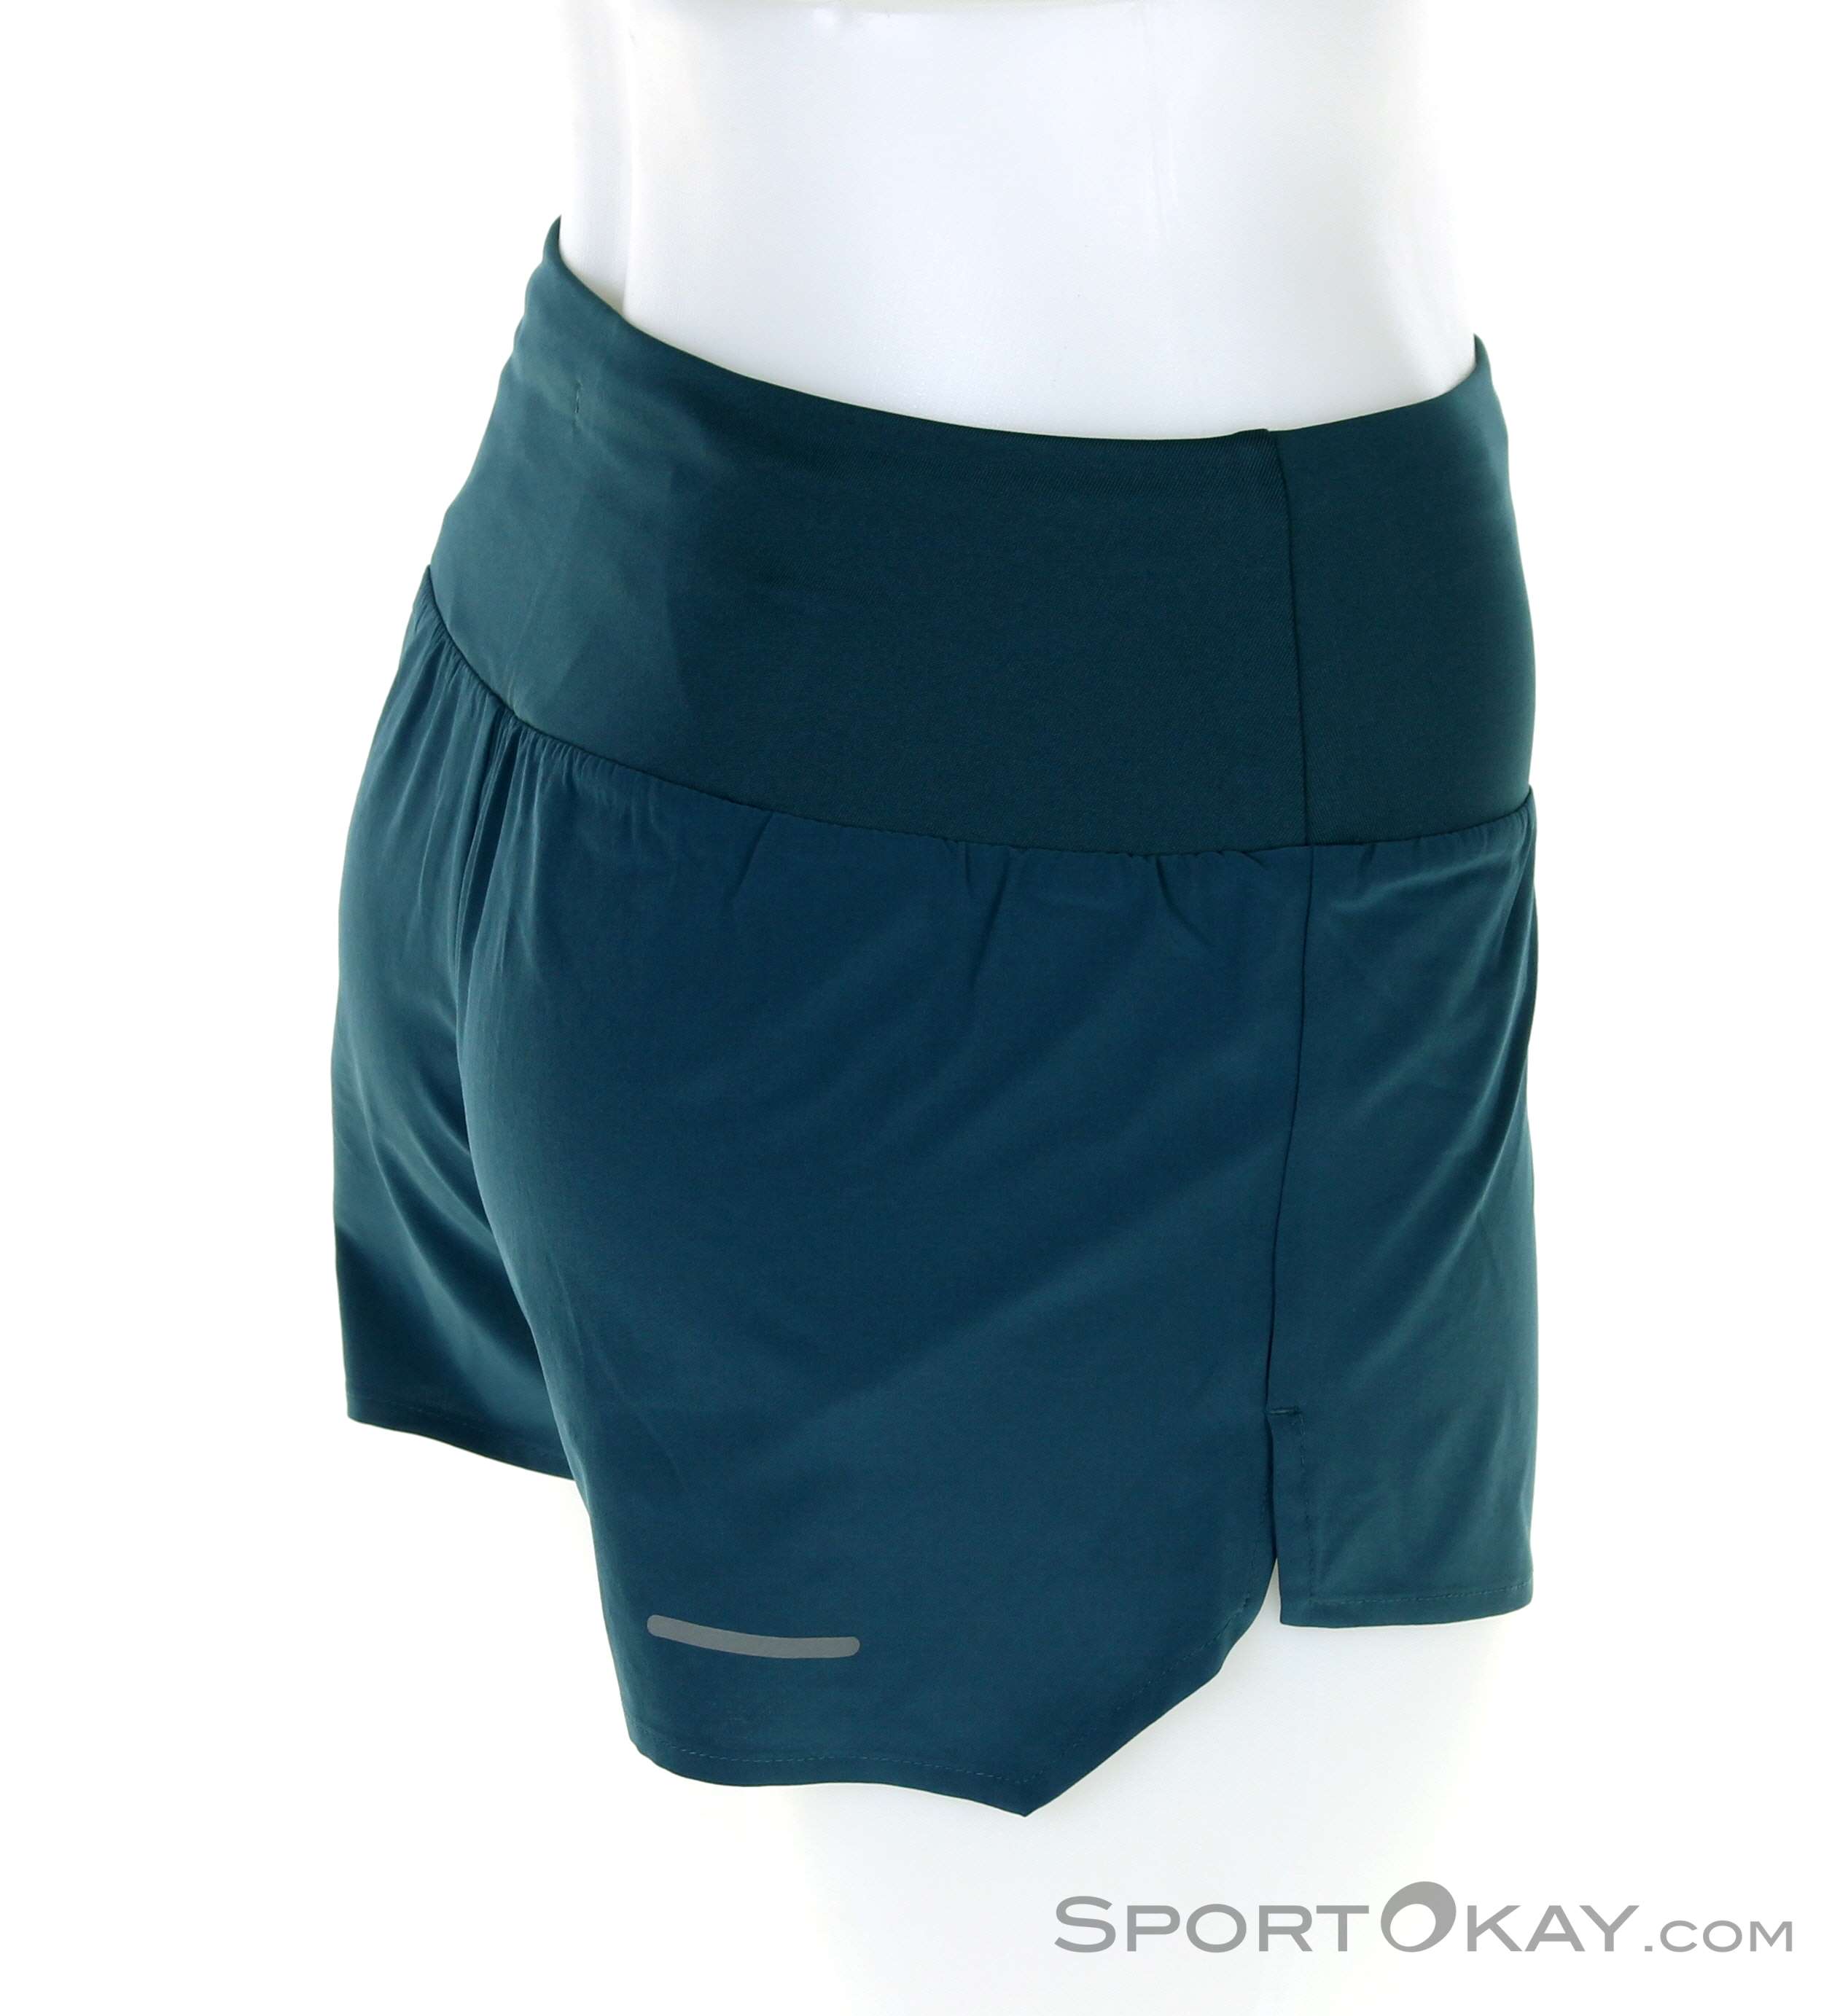 Asics Asics Running Shorts - Running Pants Clothing Women Running - Short Road in All - - 3,5